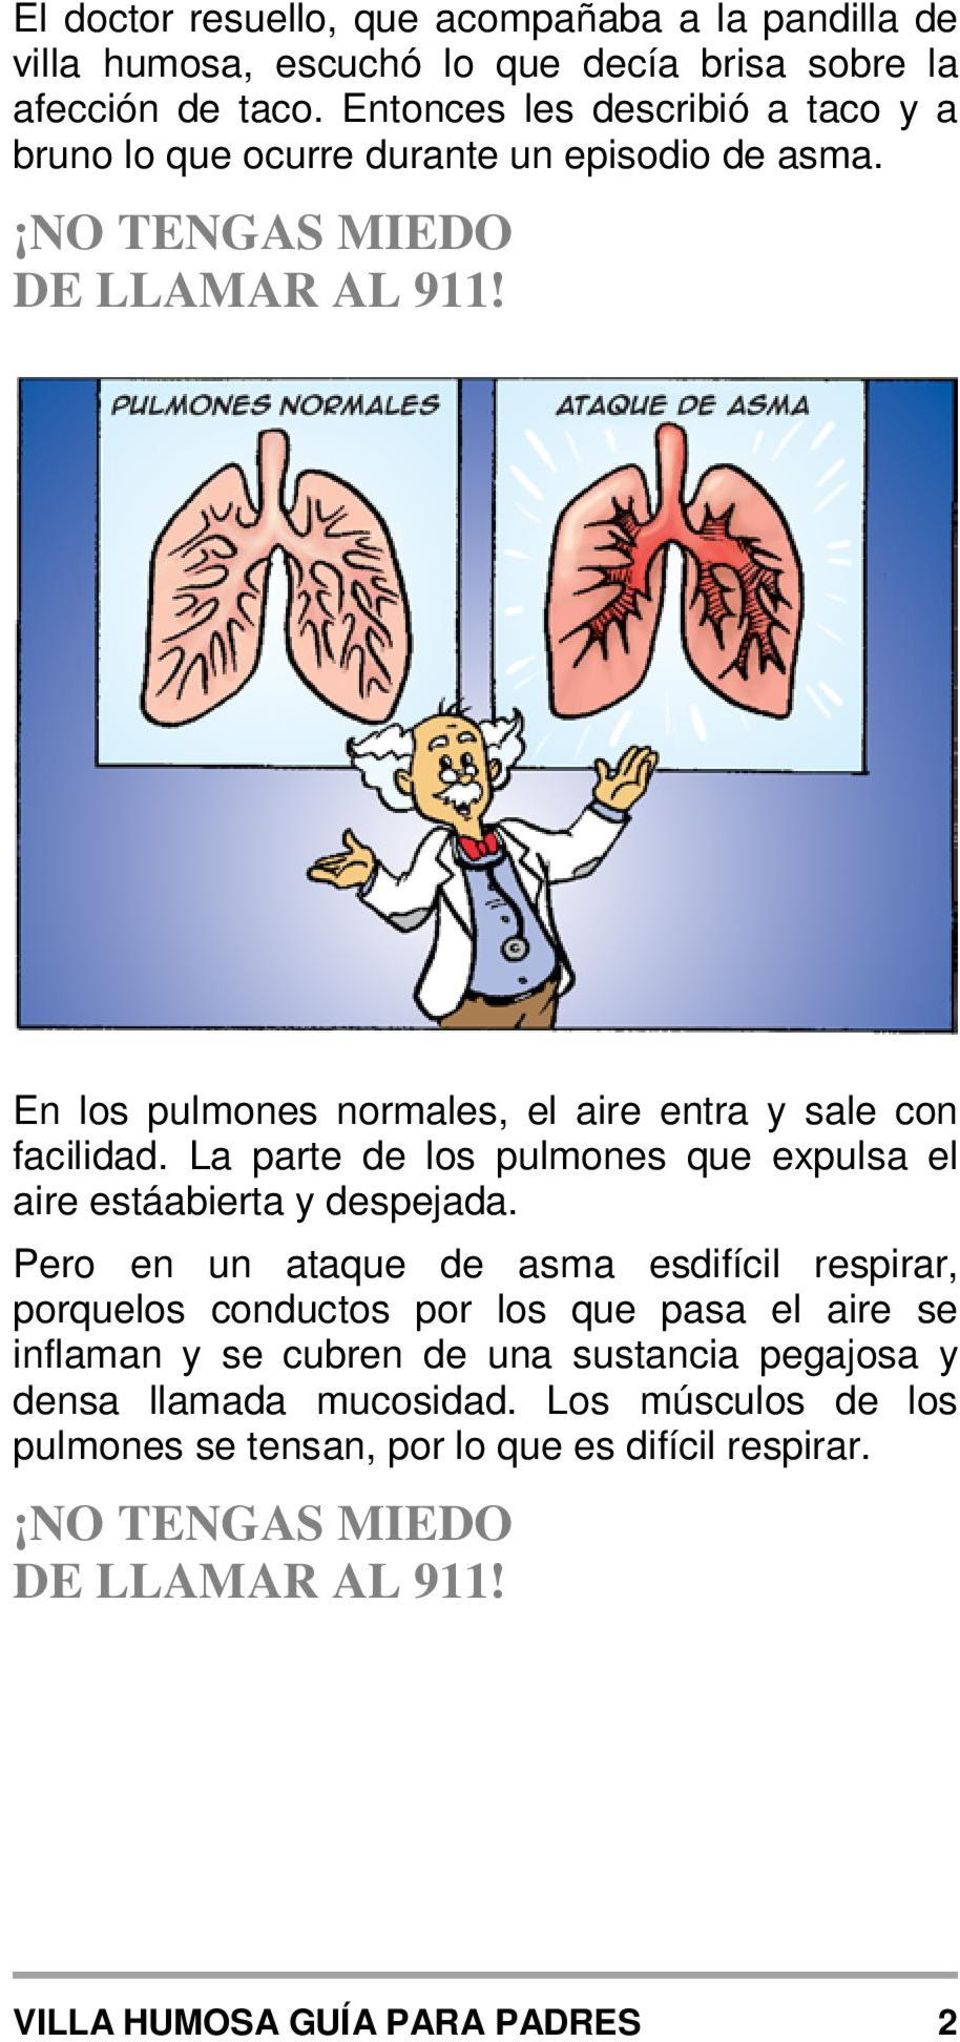 En los pulmones normales, el aire entra y sale con facilidad. La parte de los pulmones que expulsa el aire estáabierta y despejada.